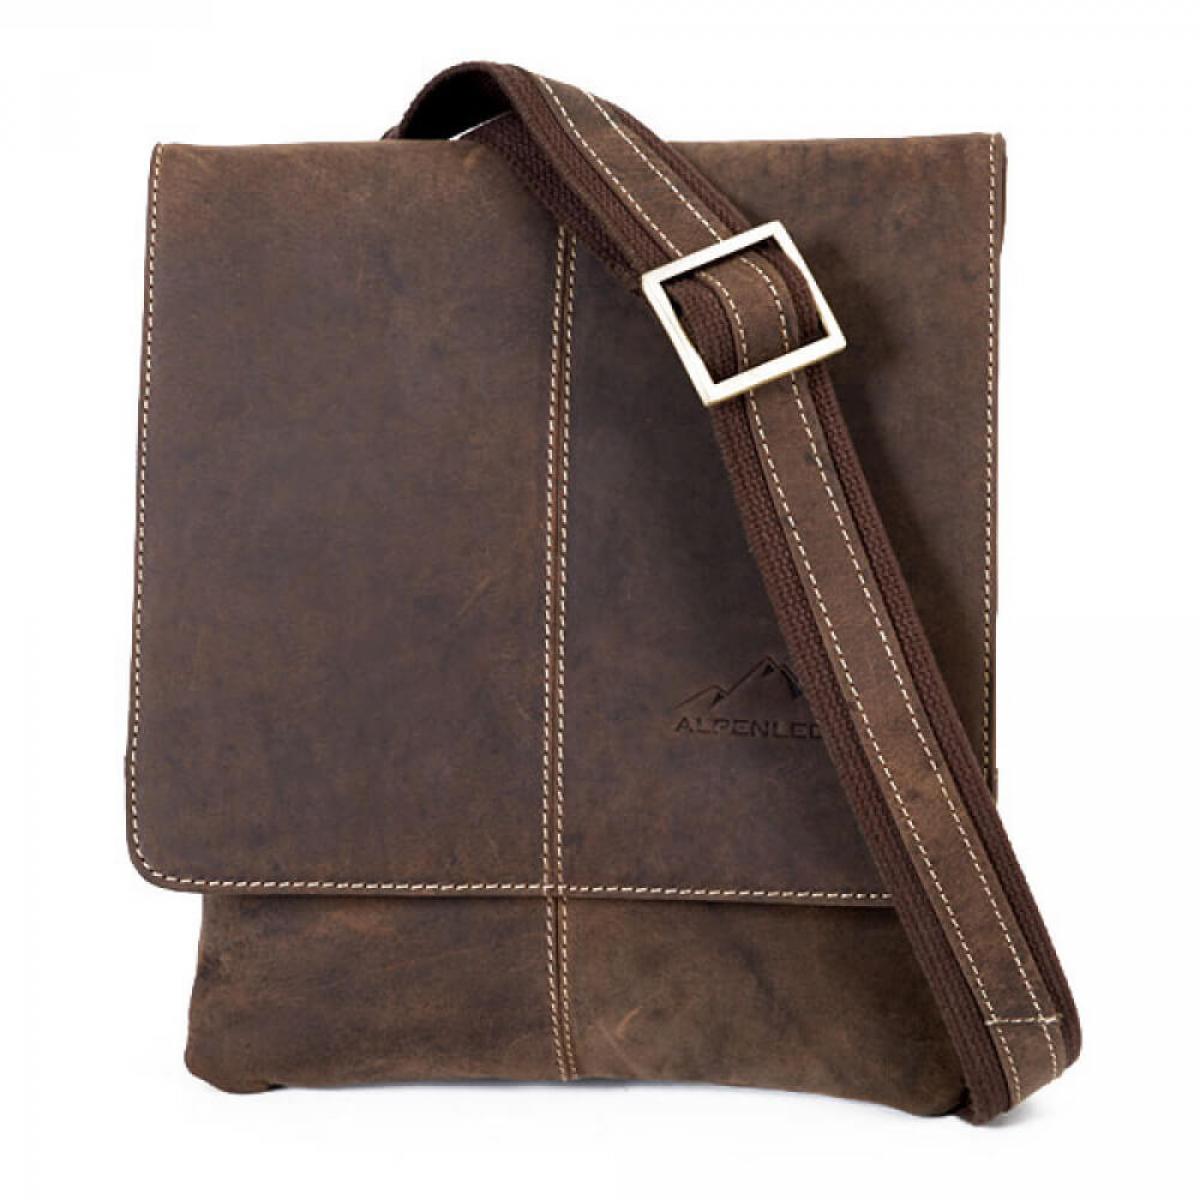 ALPENLEDER | Notebook Bag STEVE (koffee) DEN136-k